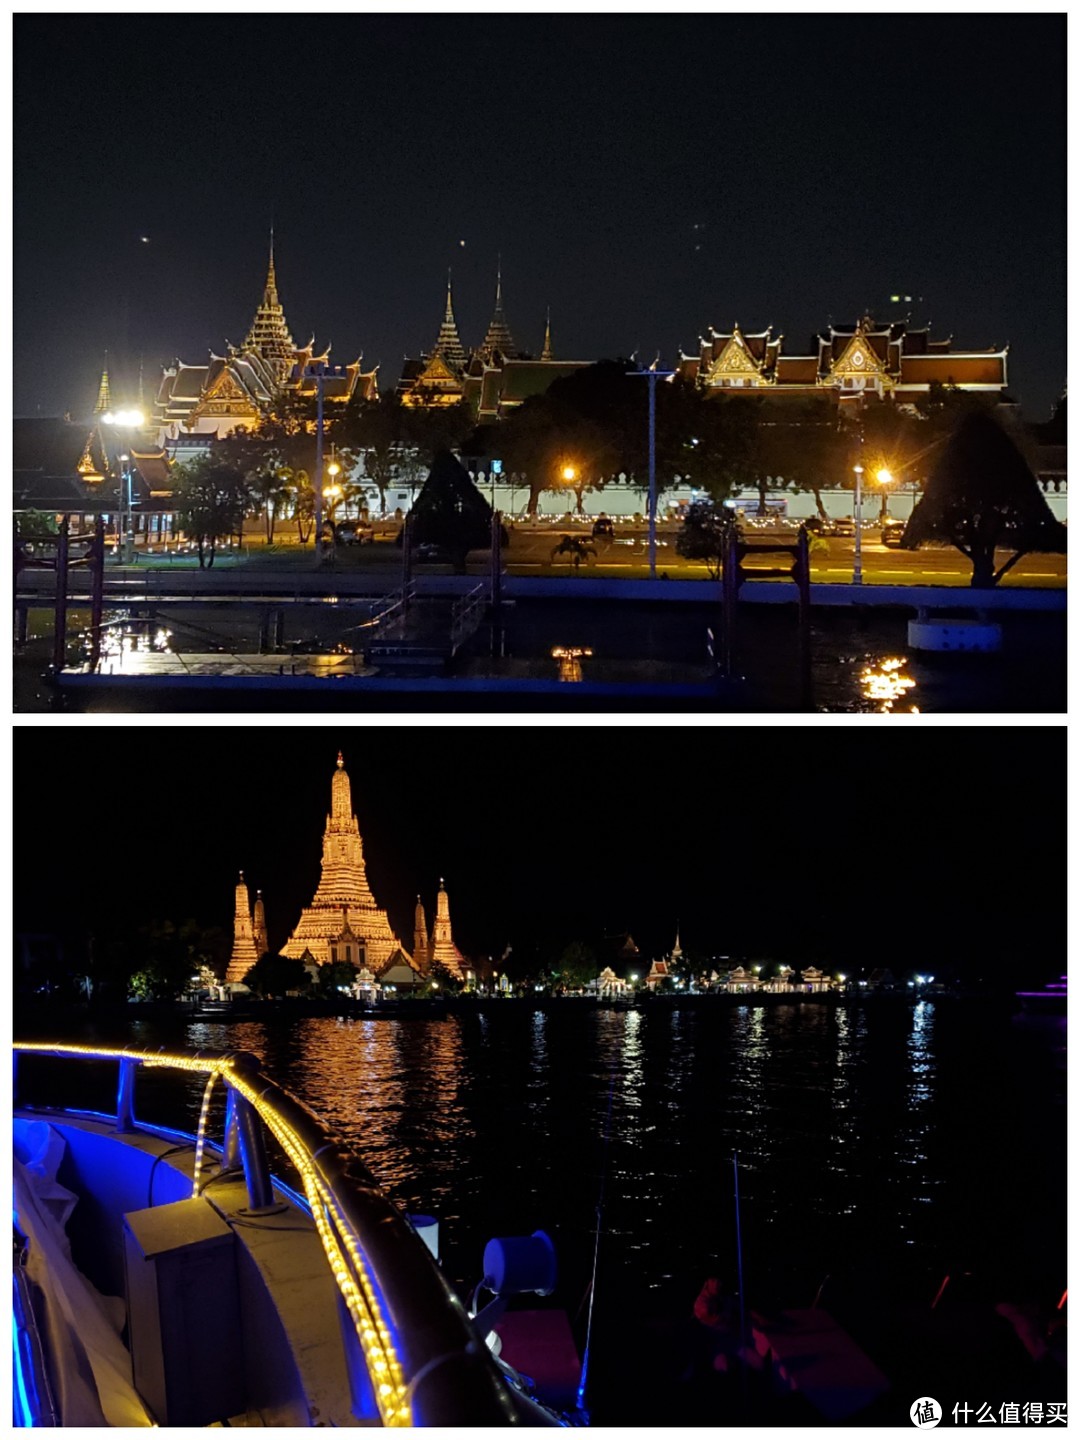 夜游湄南河时看到的大皇宫、郑王庙夜景